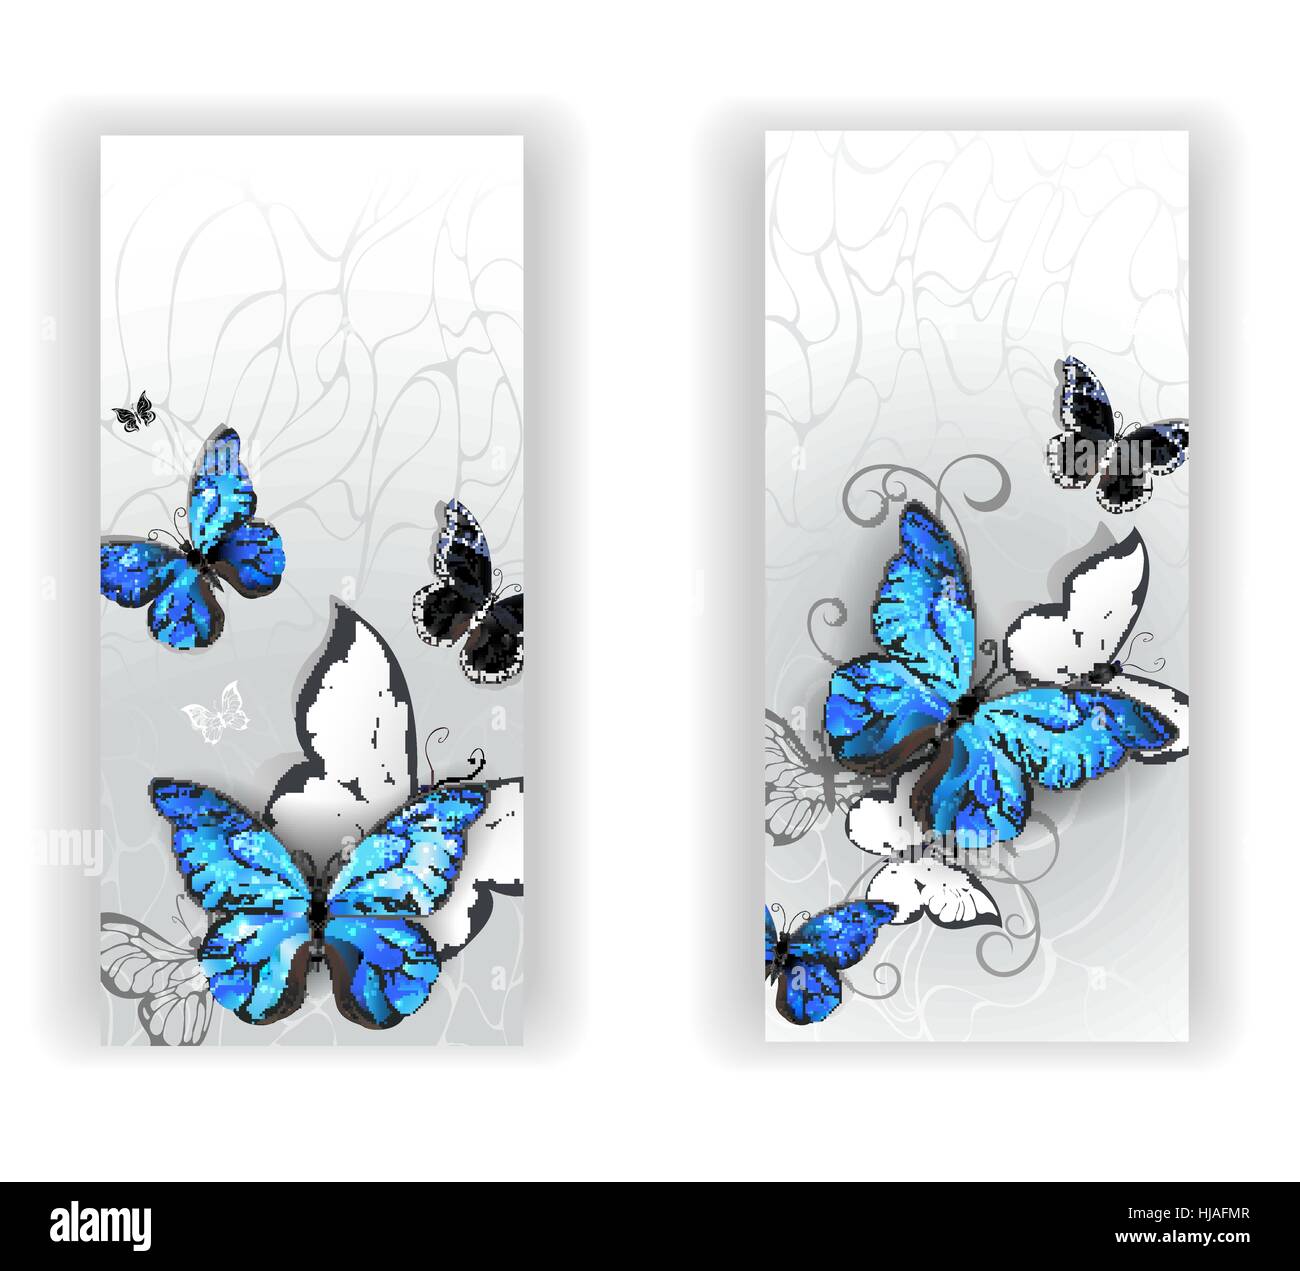 Zwei Banner mit blauer Schmetterlinge Morpho und schwarze Schmetterlinge auf grauem Hintergrund Textur. Morpho. Stock Vektor